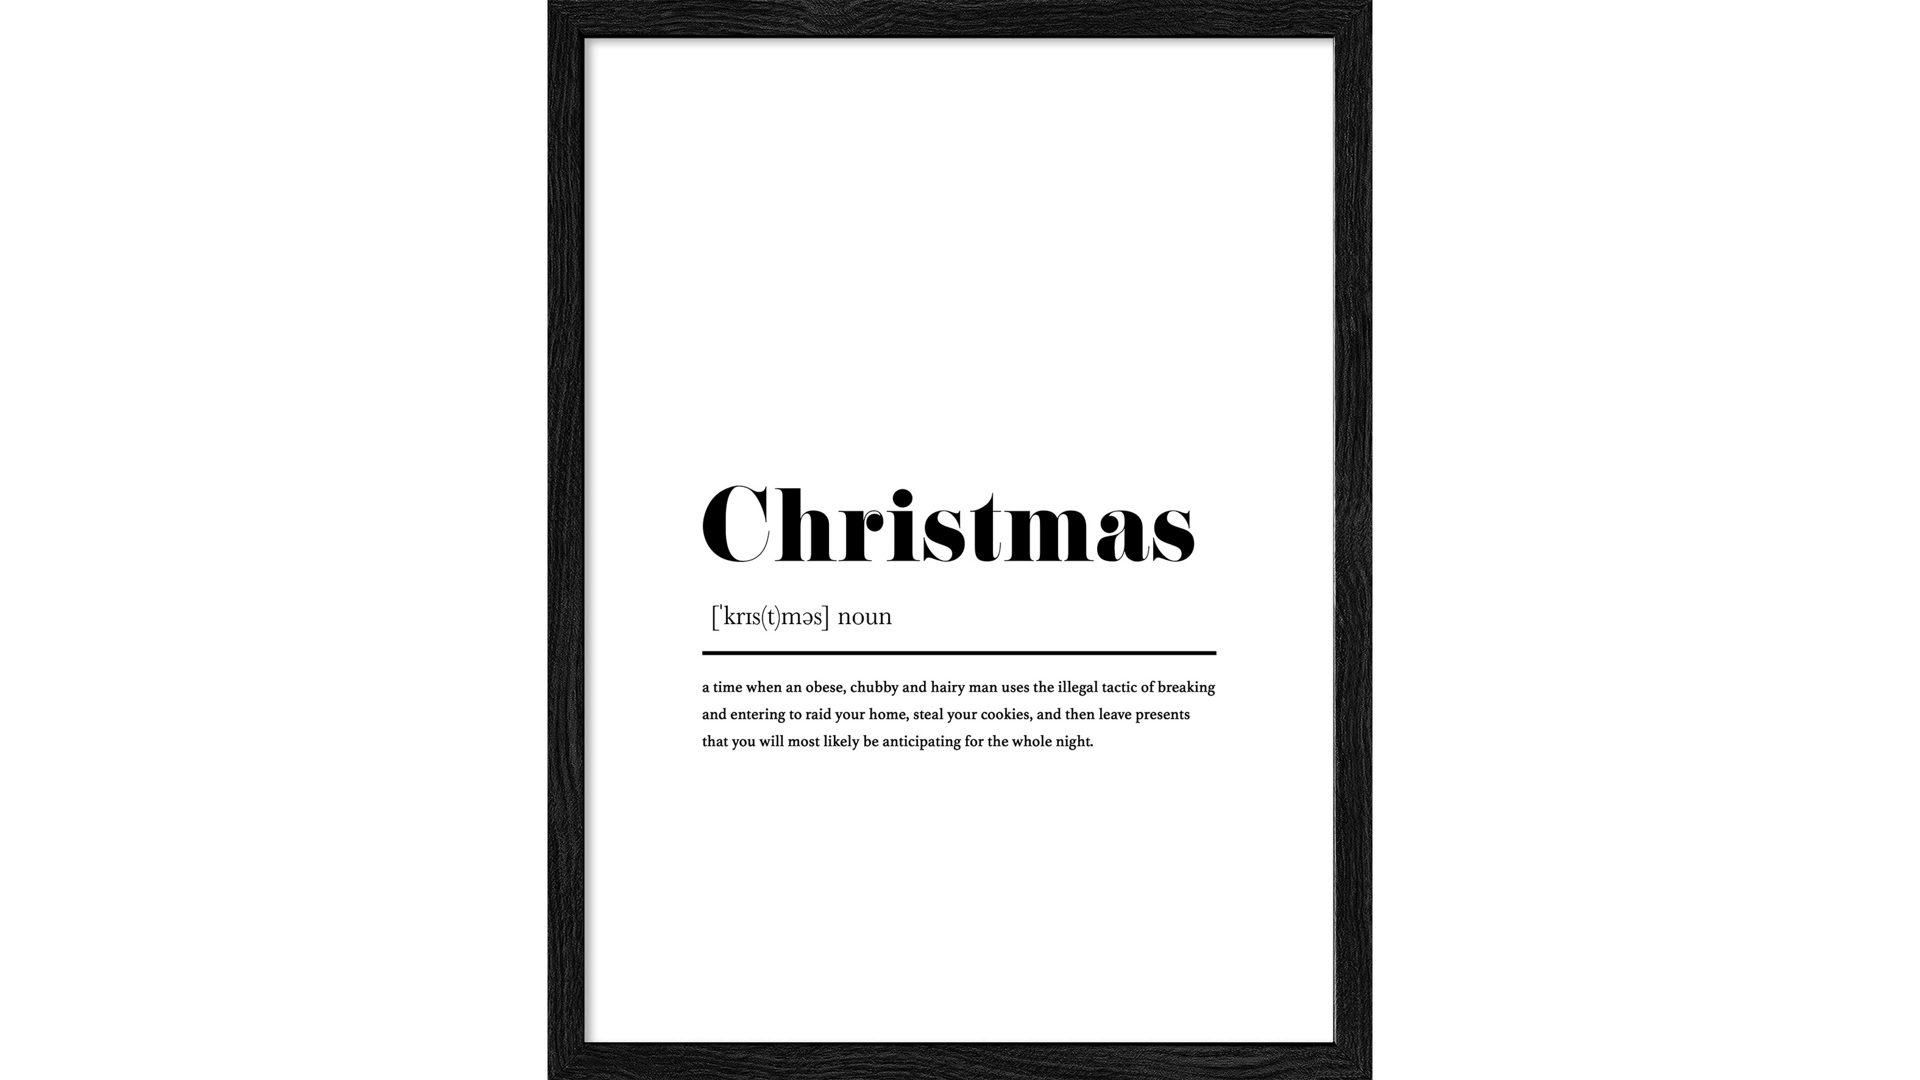 Kunstdruck Pro®art bilderpalette aus Karton / Papier / Pappe in Weiß PRO®ART Kunstdruck Christmas 1 Weiß & Schwarz - ca. 33 x 43 cm